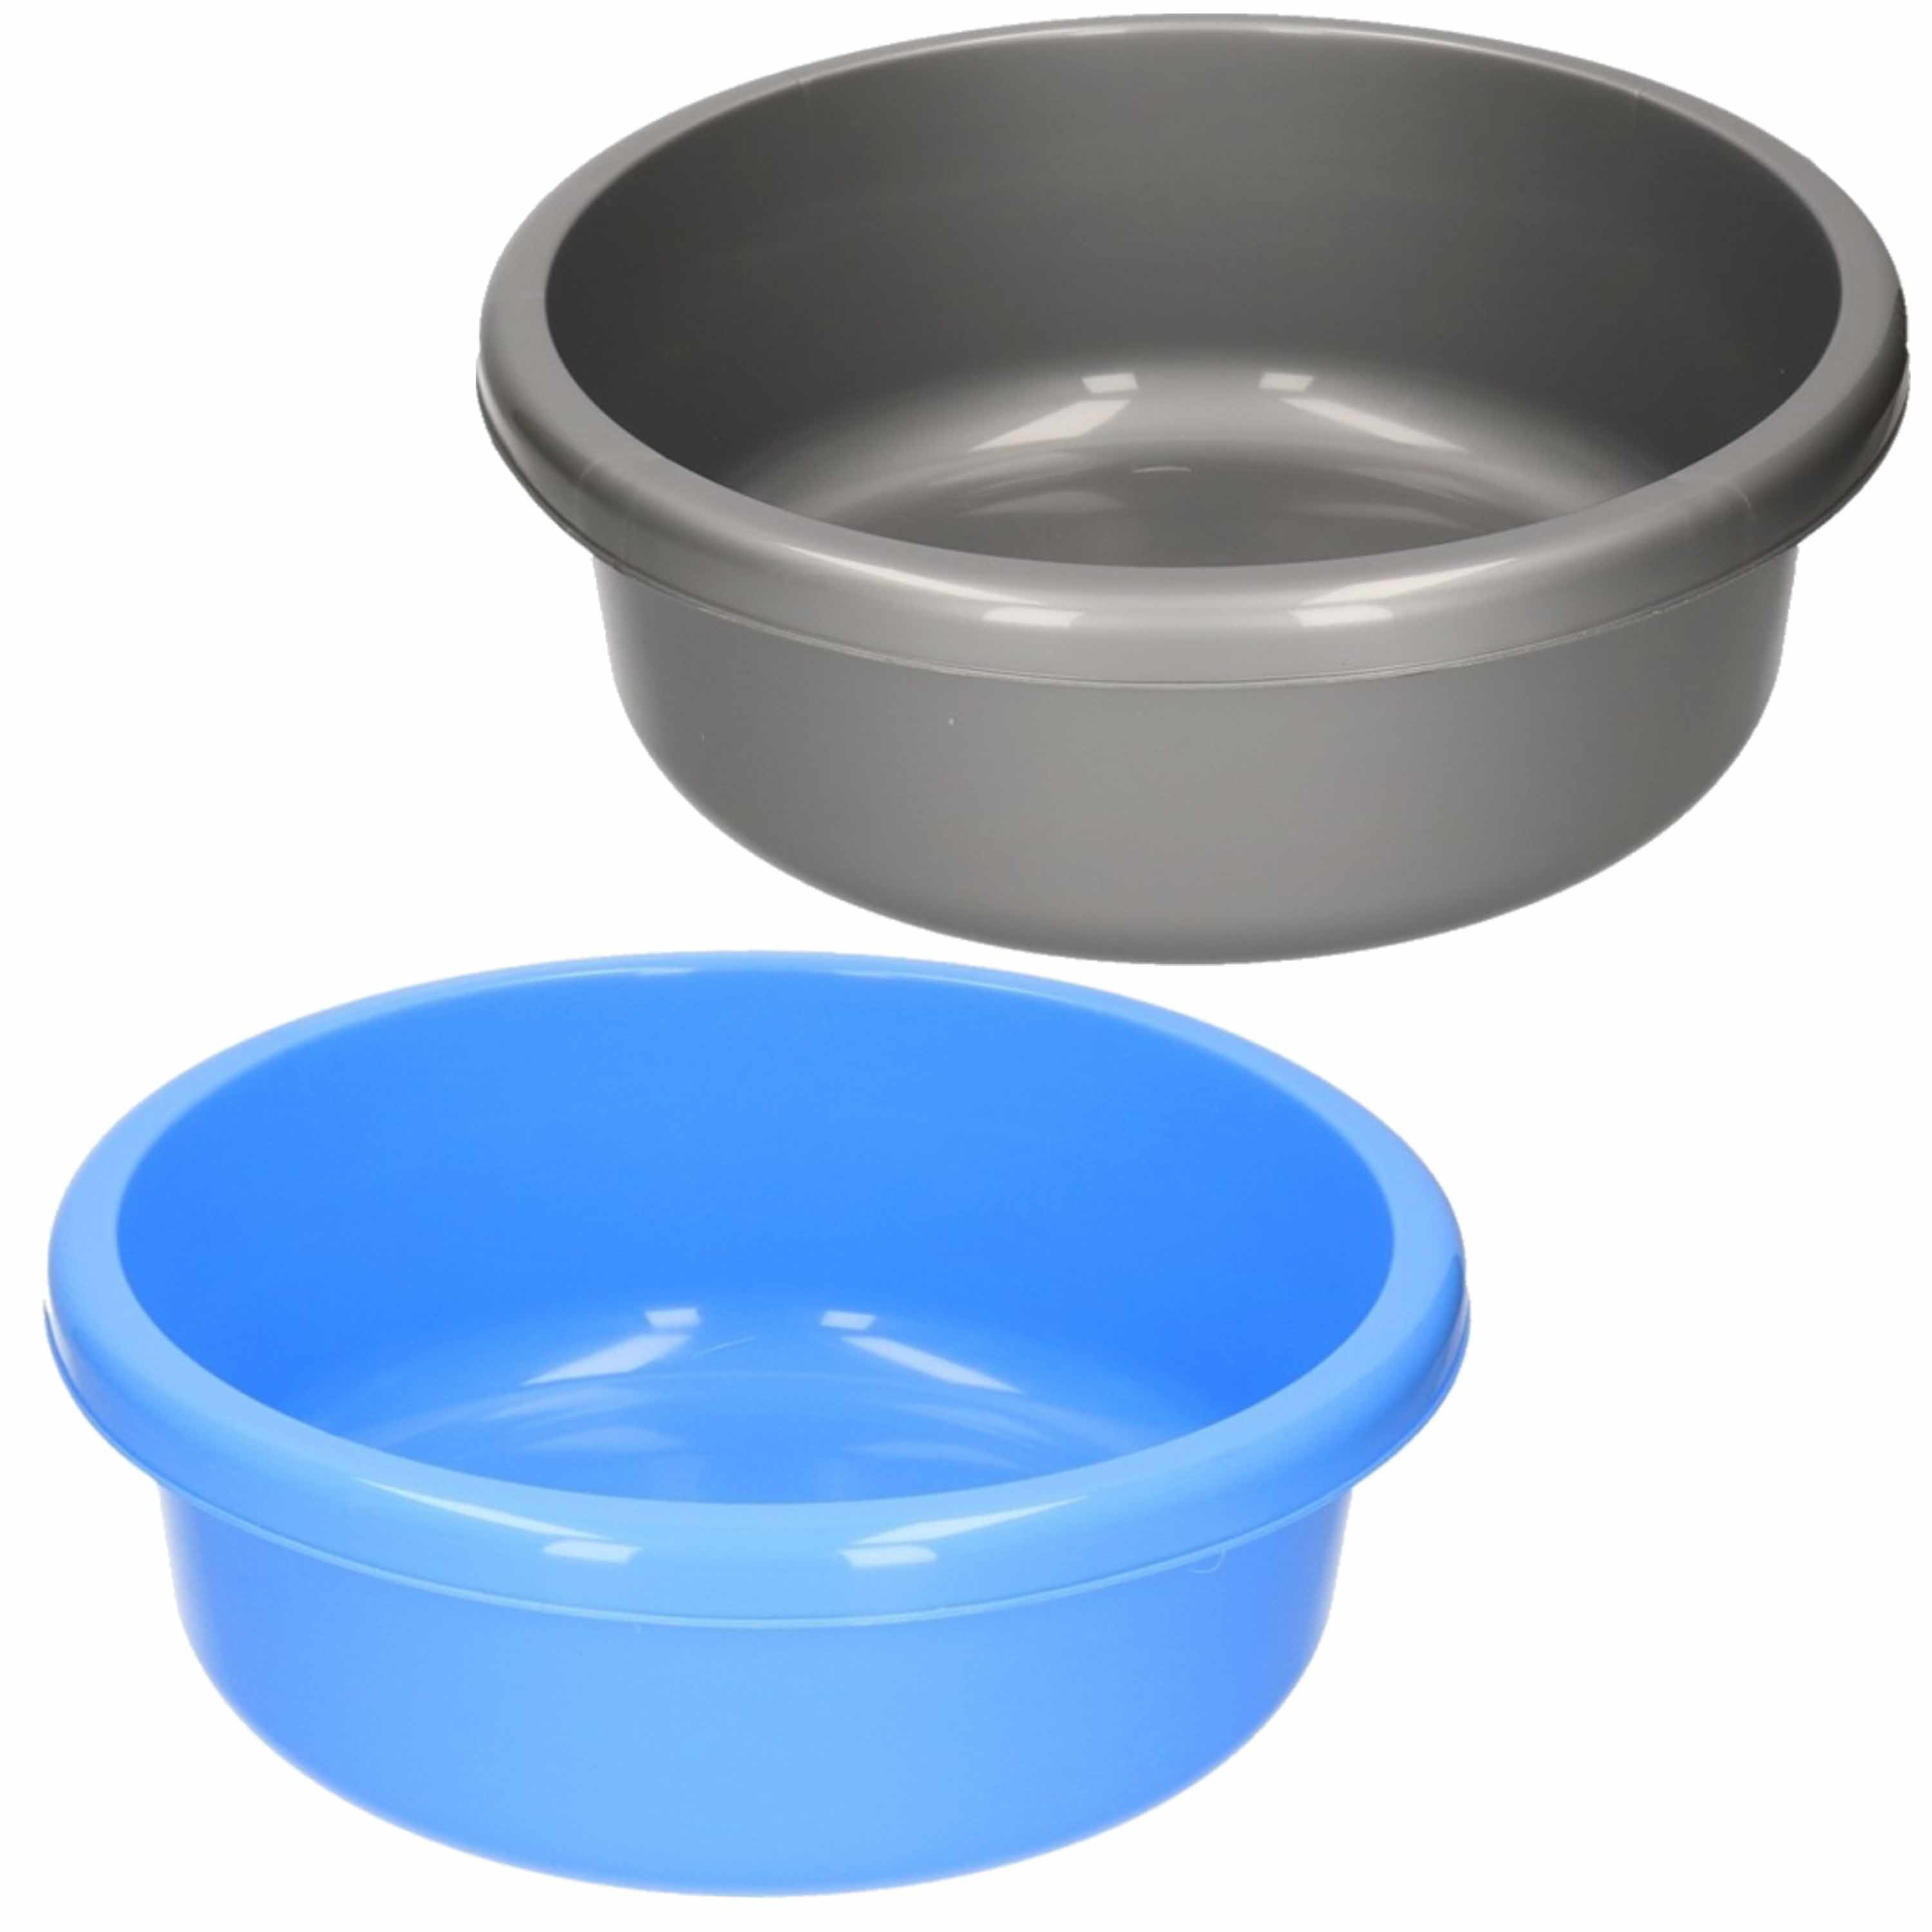 Set van 2 ronde afwasteiltjes 9 liter in de kleuren blauw en grijs 36 x 13 cm